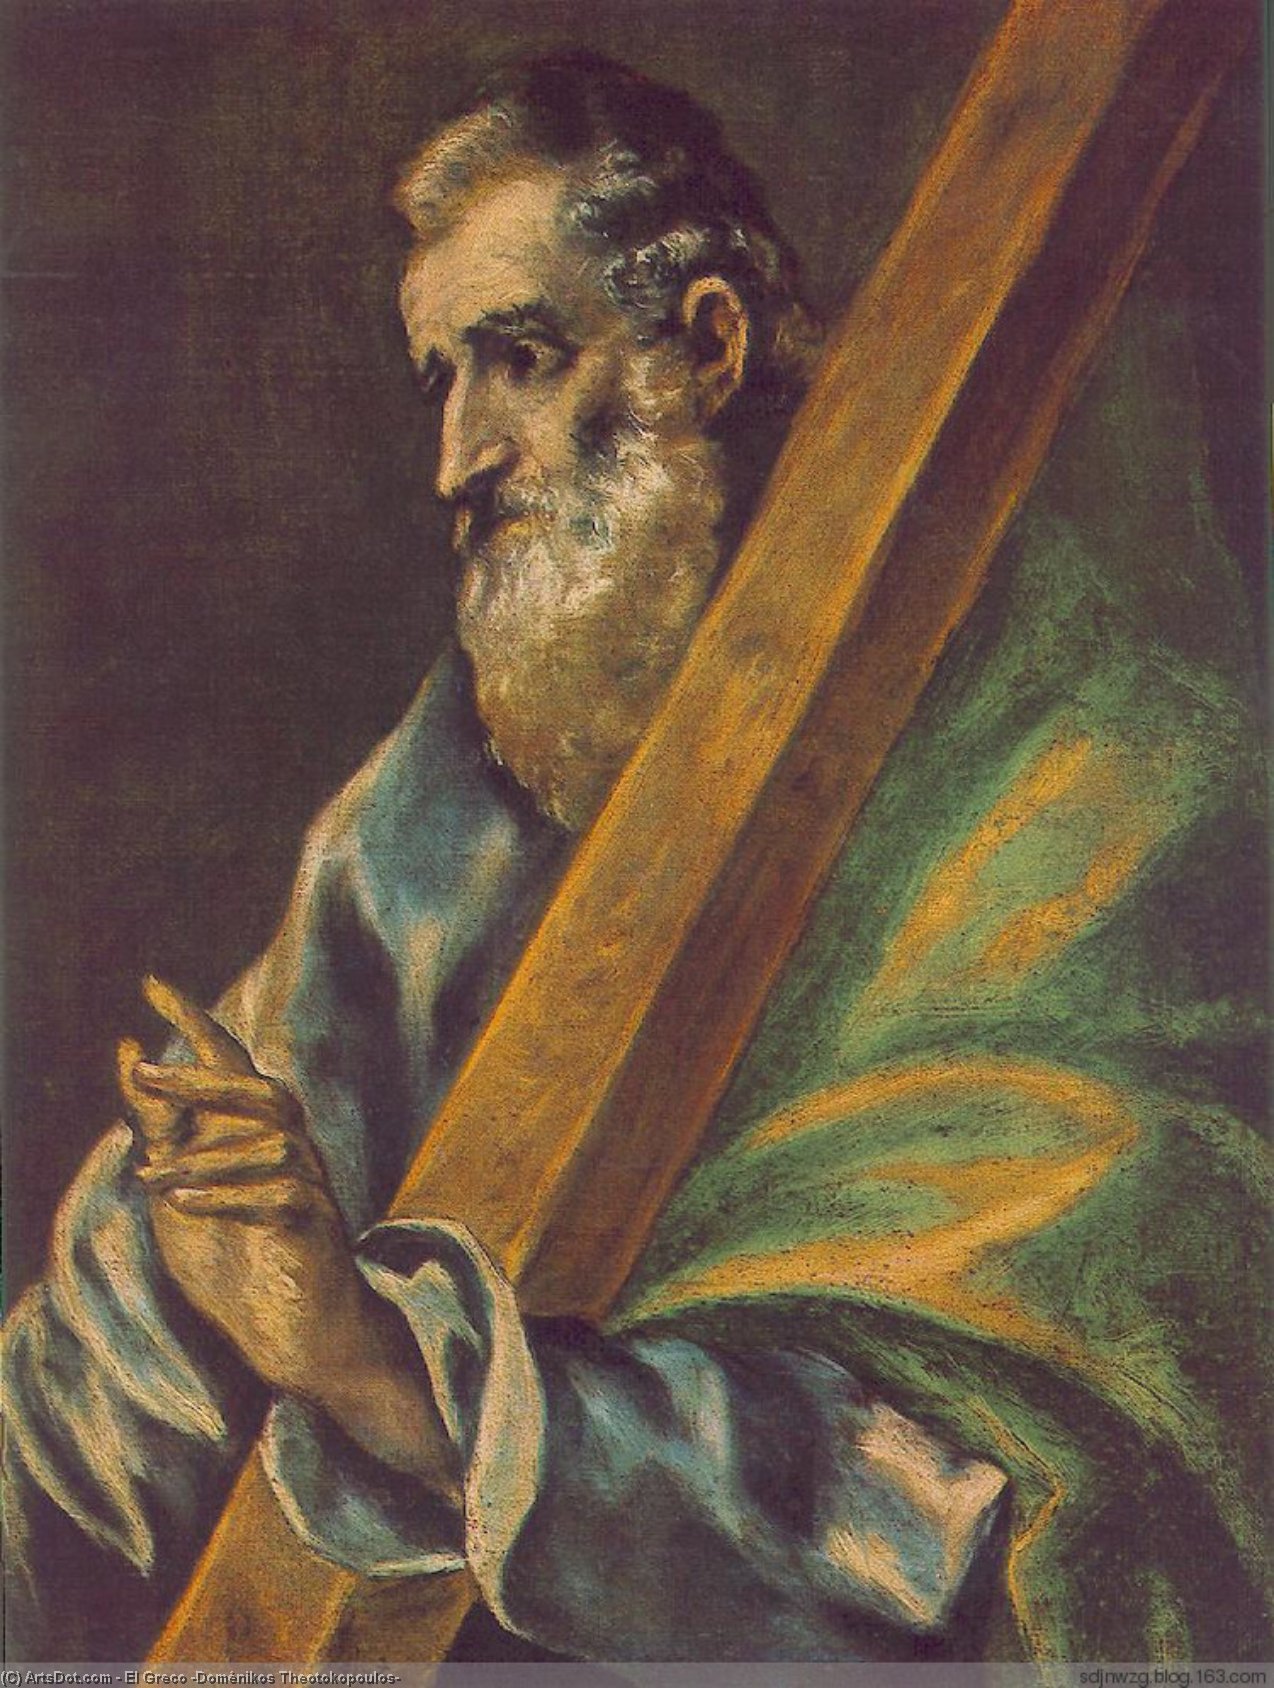 WikiOO.org - Enciclopédia das Belas Artes - Pintura, Arte por El Greco (Doménikos Theotokopoulos) - Apostle St Andrew